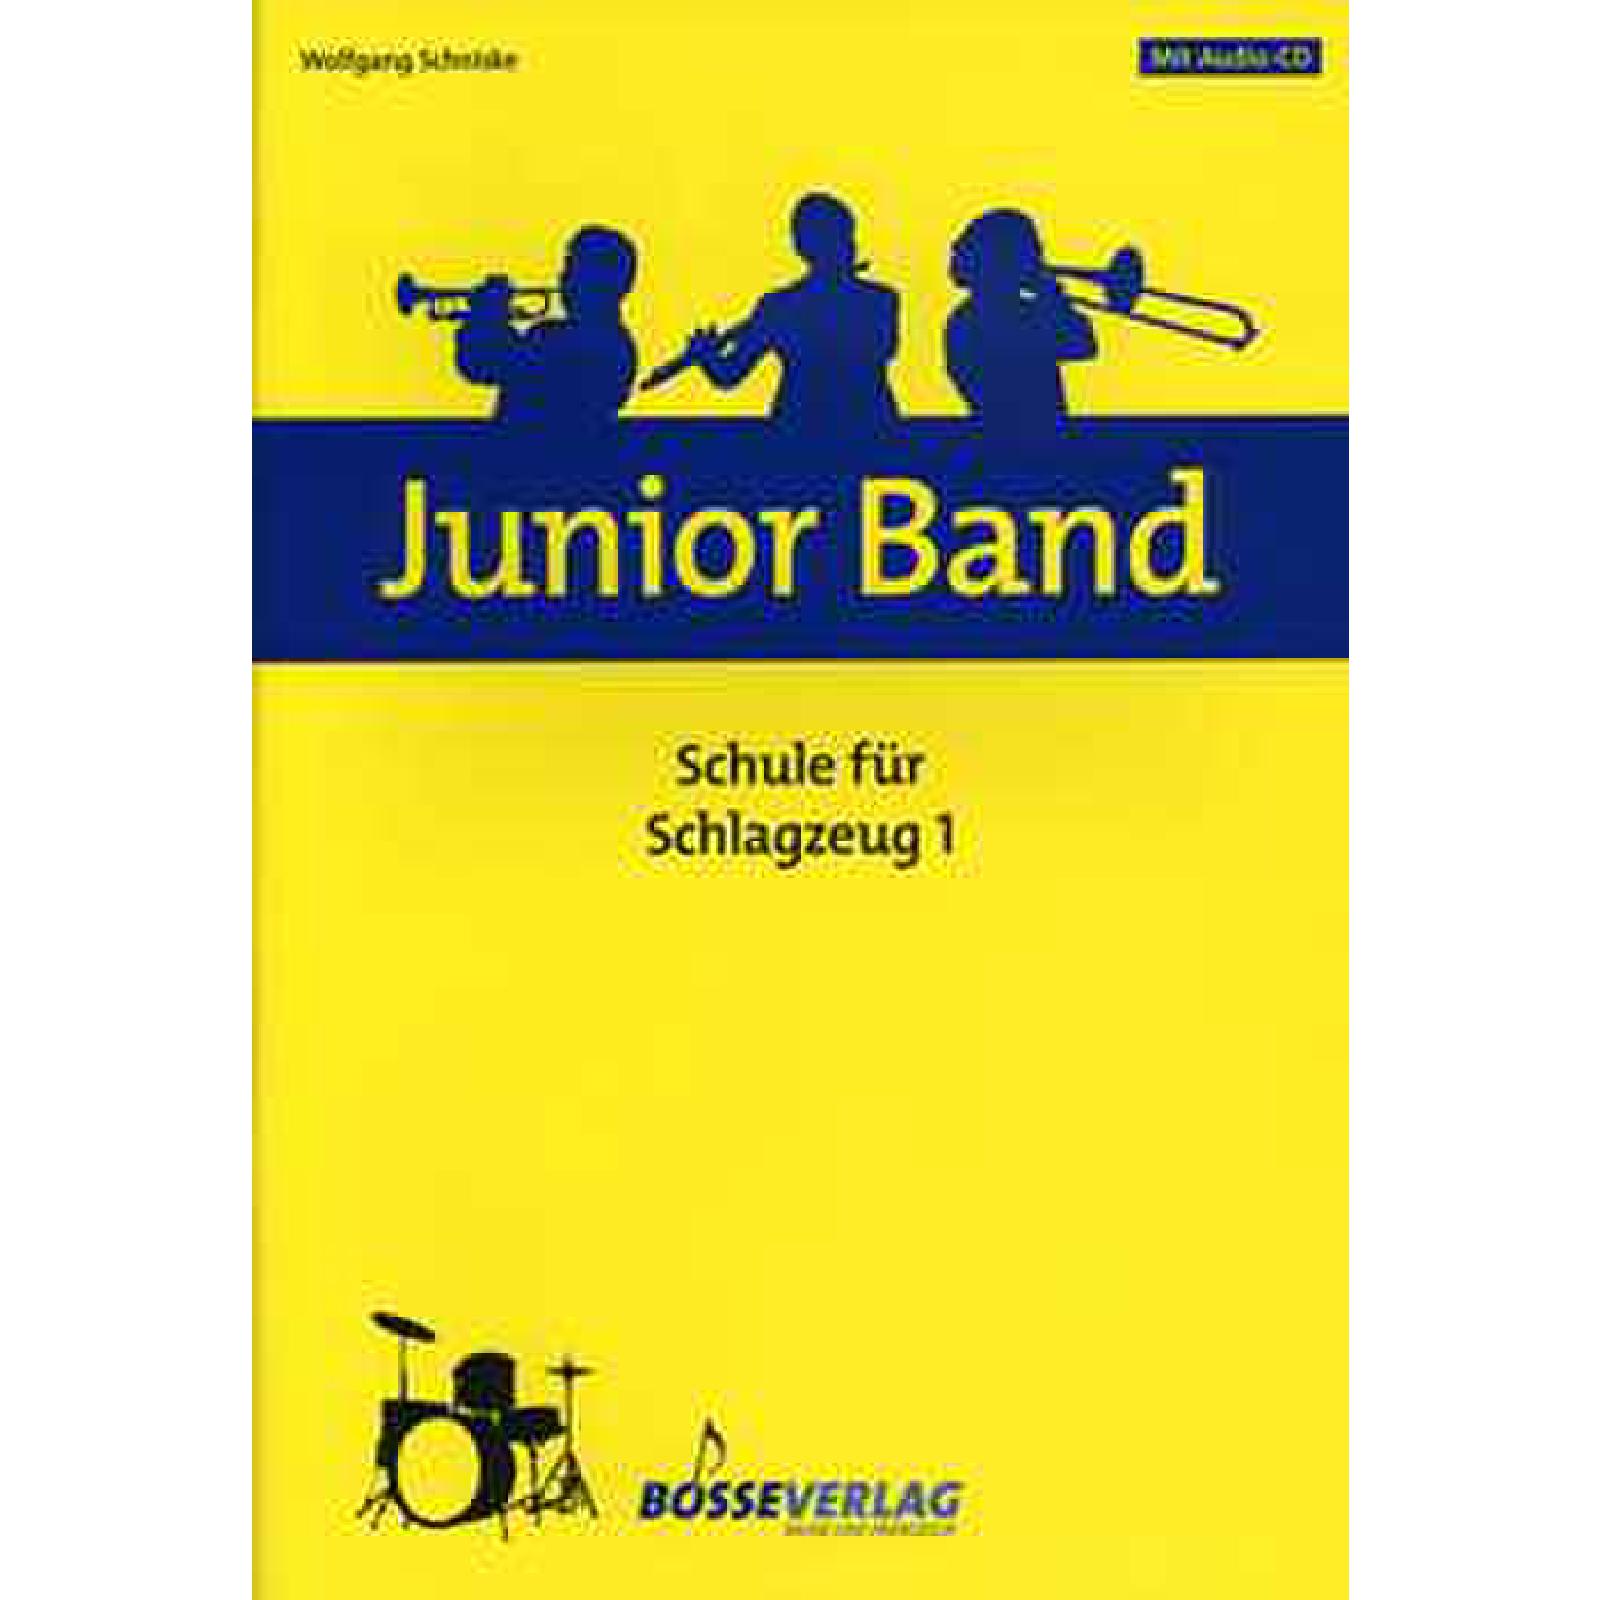 Junior Band Schule 1 - Schlagzeug